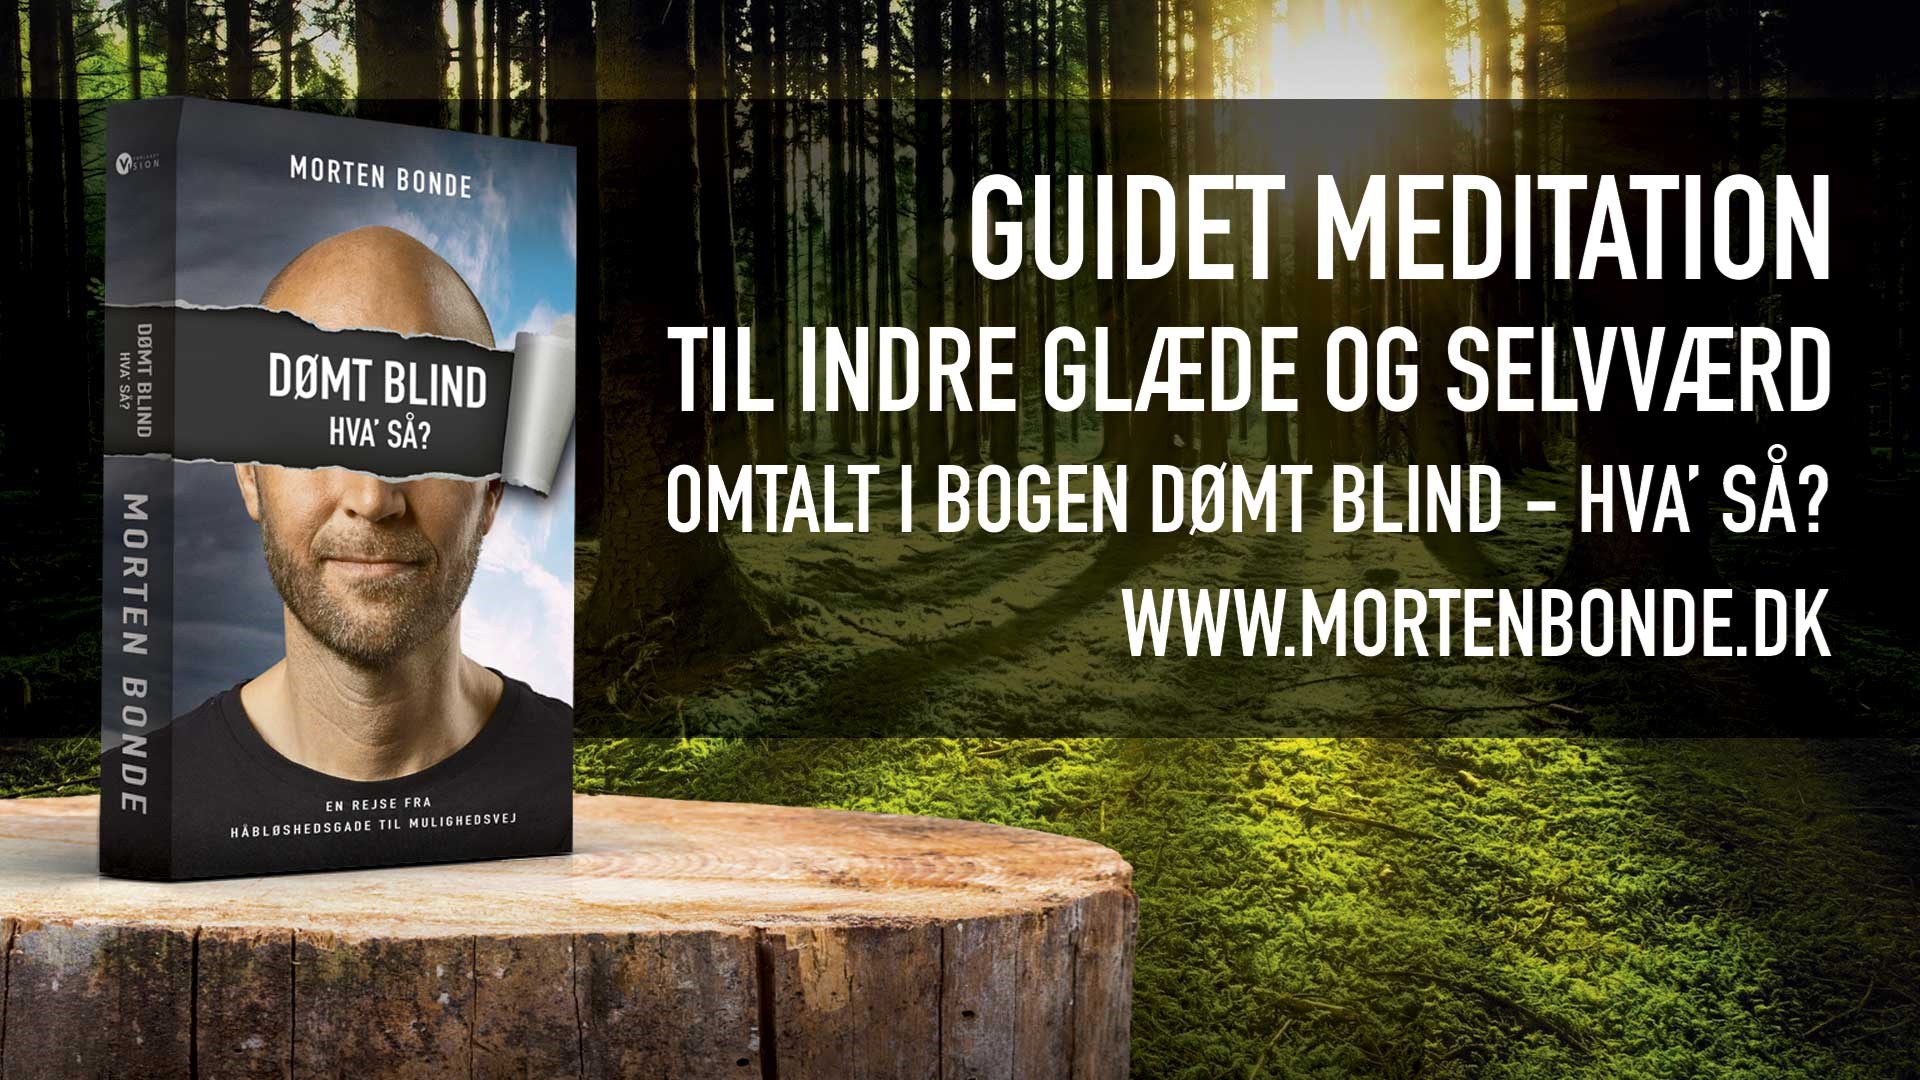 Guided meditation til indre glæde og selvværd omtalt i bogen Dømt blind - hva' så? af Morten Bonde